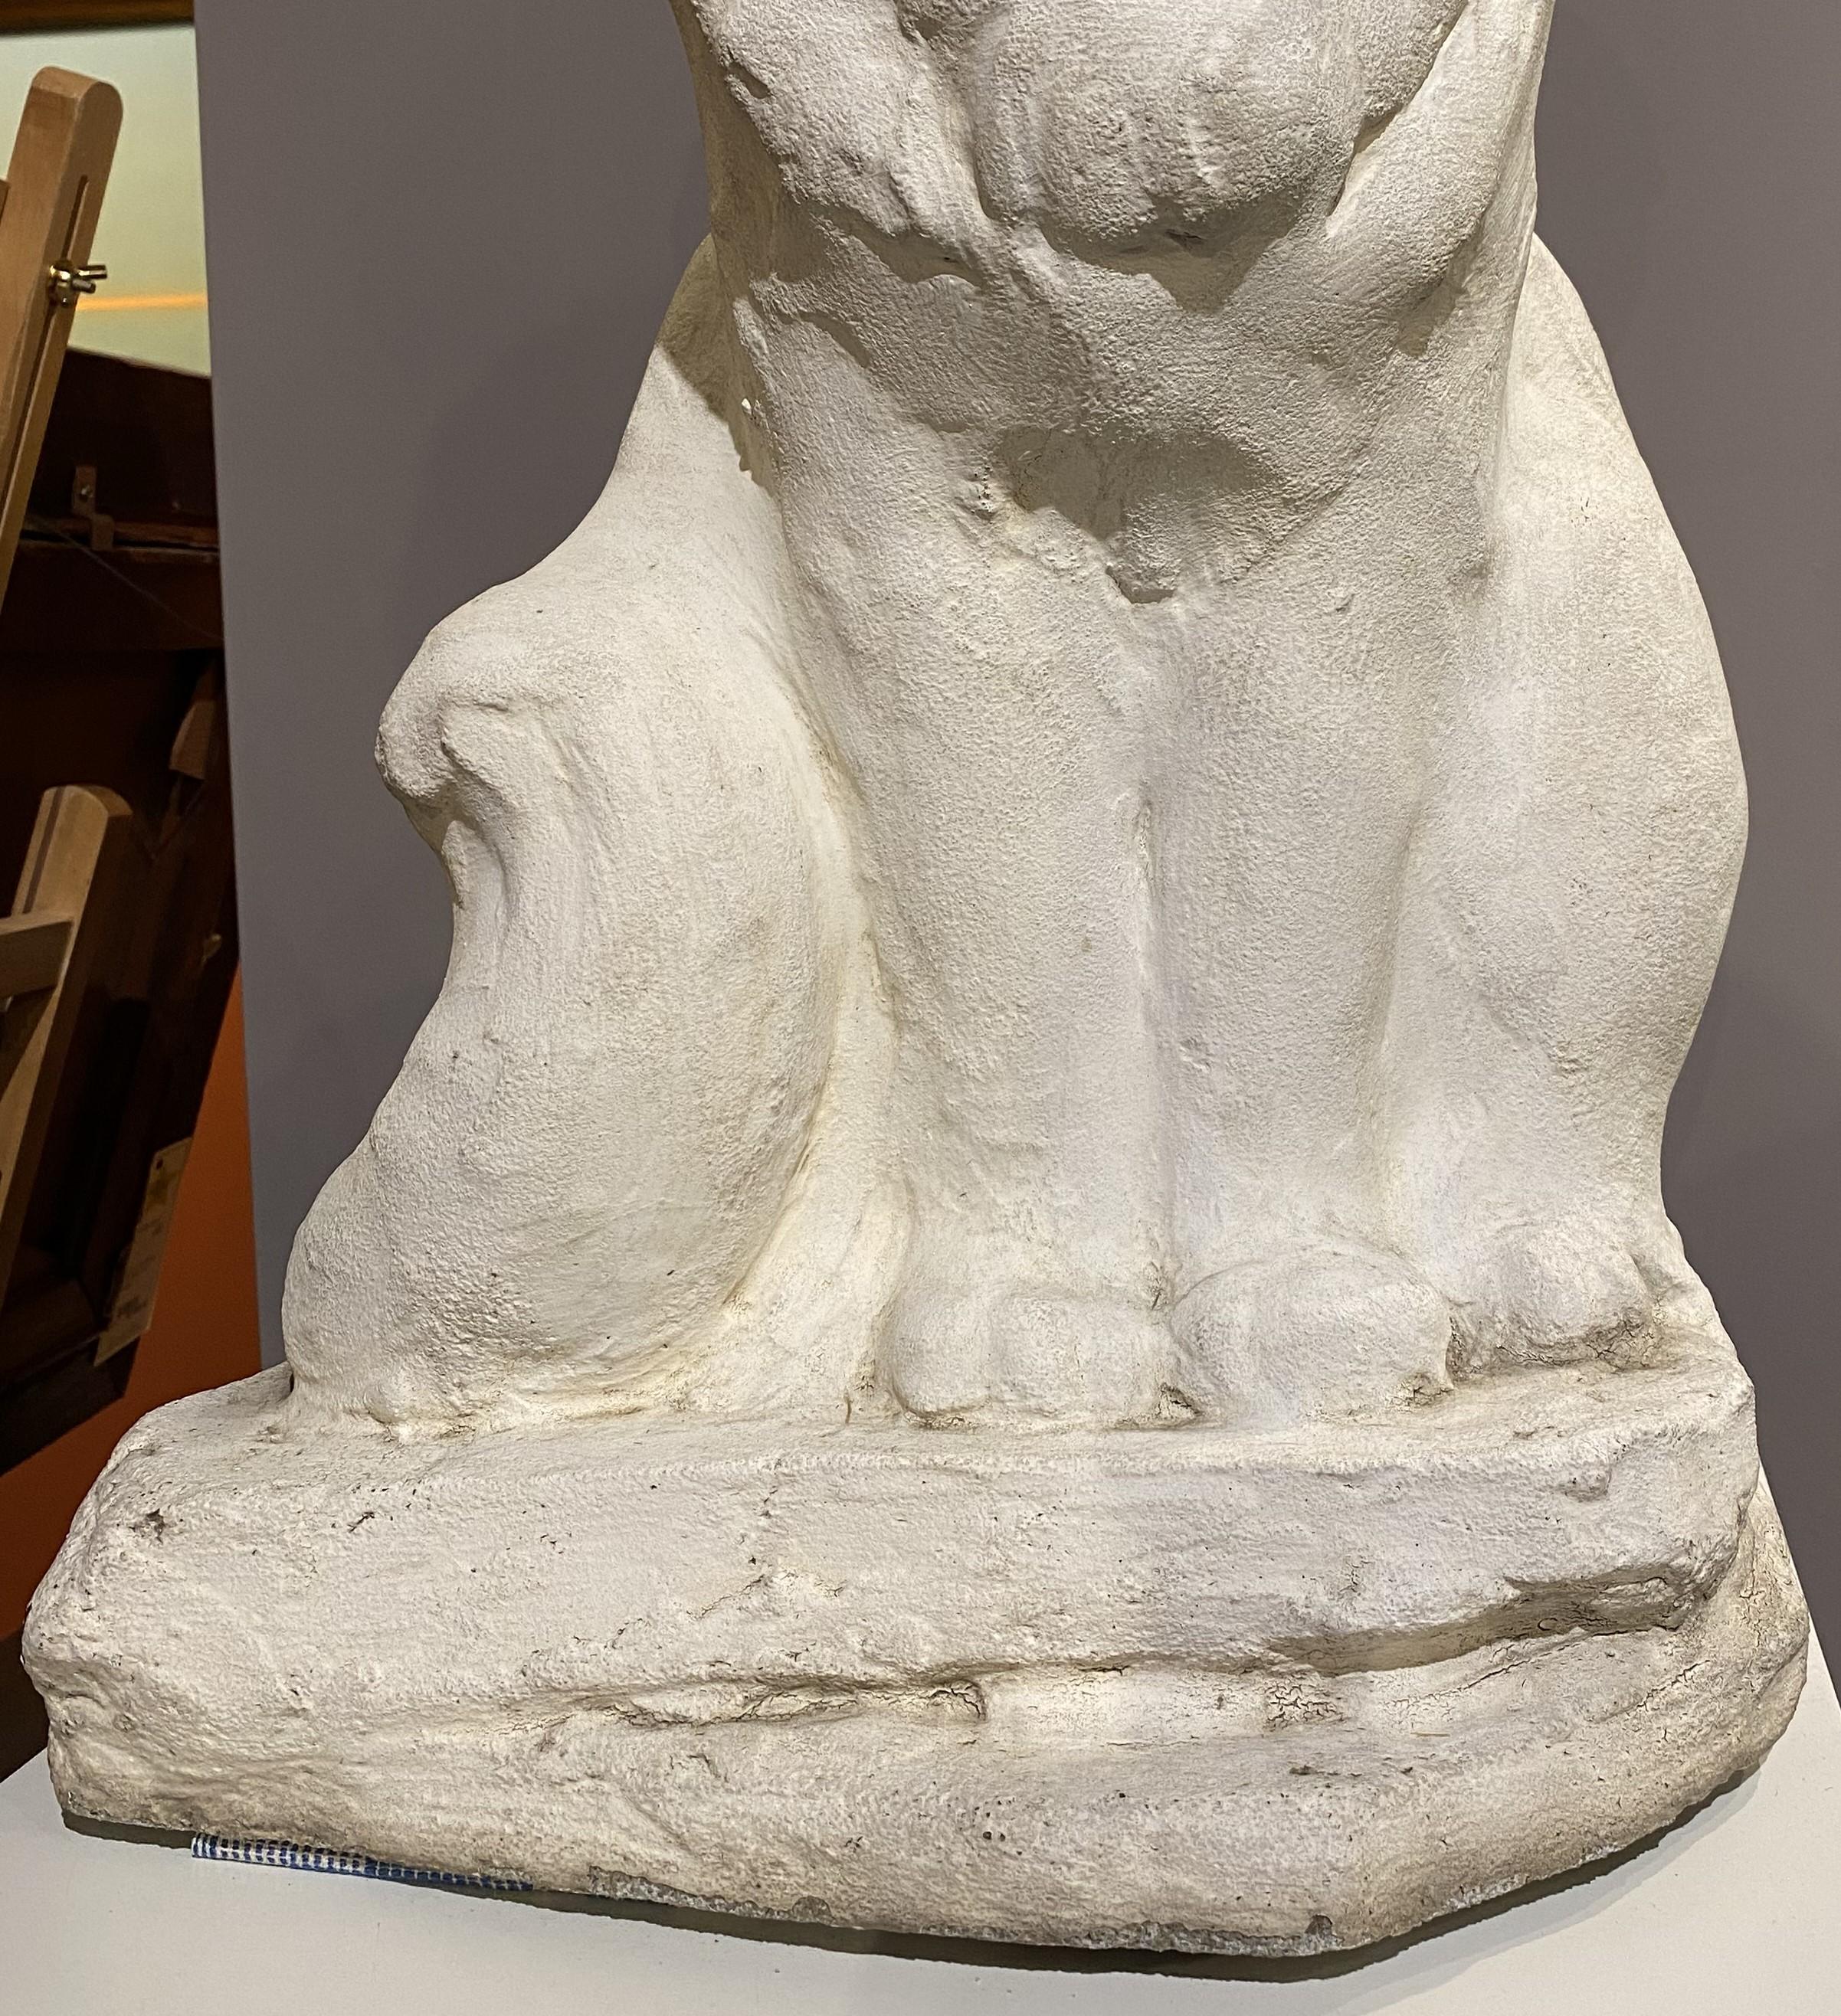 Eine wunderbare Zementskulptur des Künstlers  Persische Katze Pou Pou der amerikanischen Künstlerin Harriet Whitney Frishmuth (1880-1970). Harriet wurde in Philadelphia, PA, geboren und studierte als Teenager Bildhauerei in Paris (mit Kritiken von